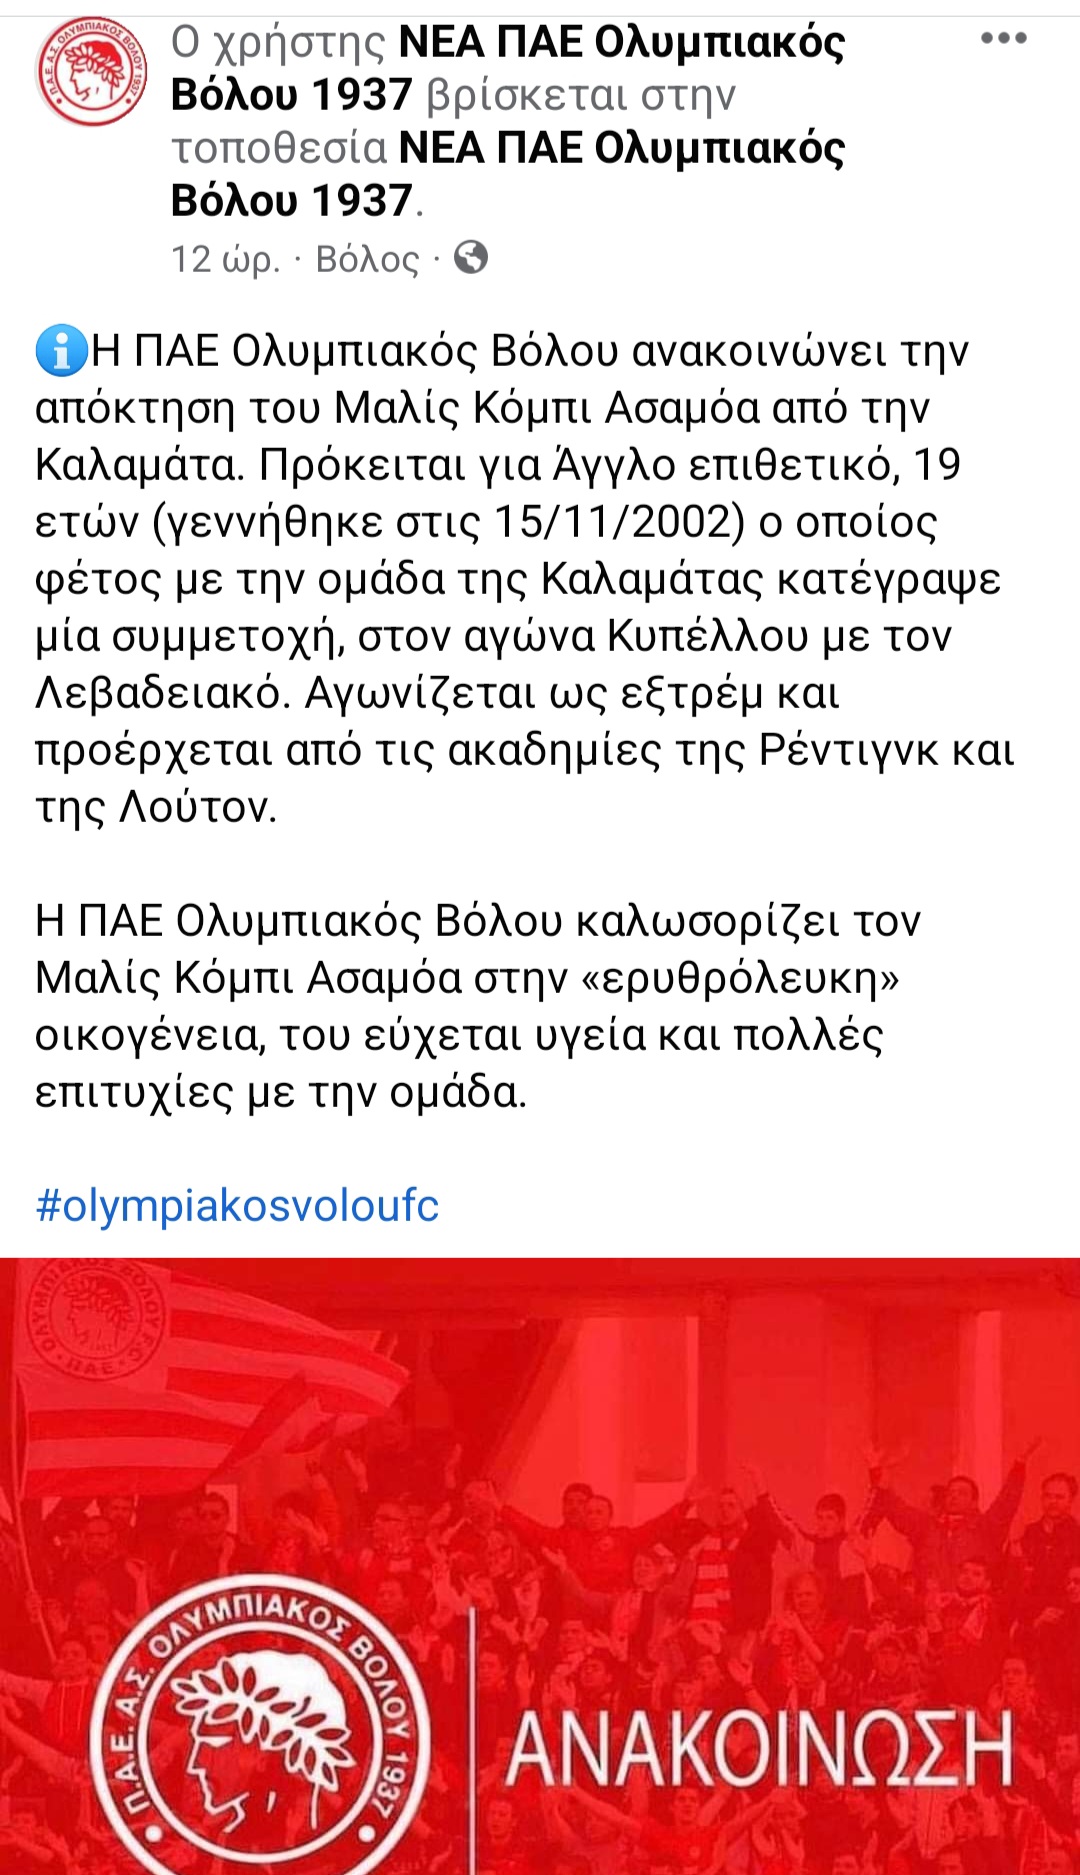 Καμια σχέση ο Ολυμπιακός Βόλου με το κασκόλ της Καλαμάτας του Ασαμόα (+pic)